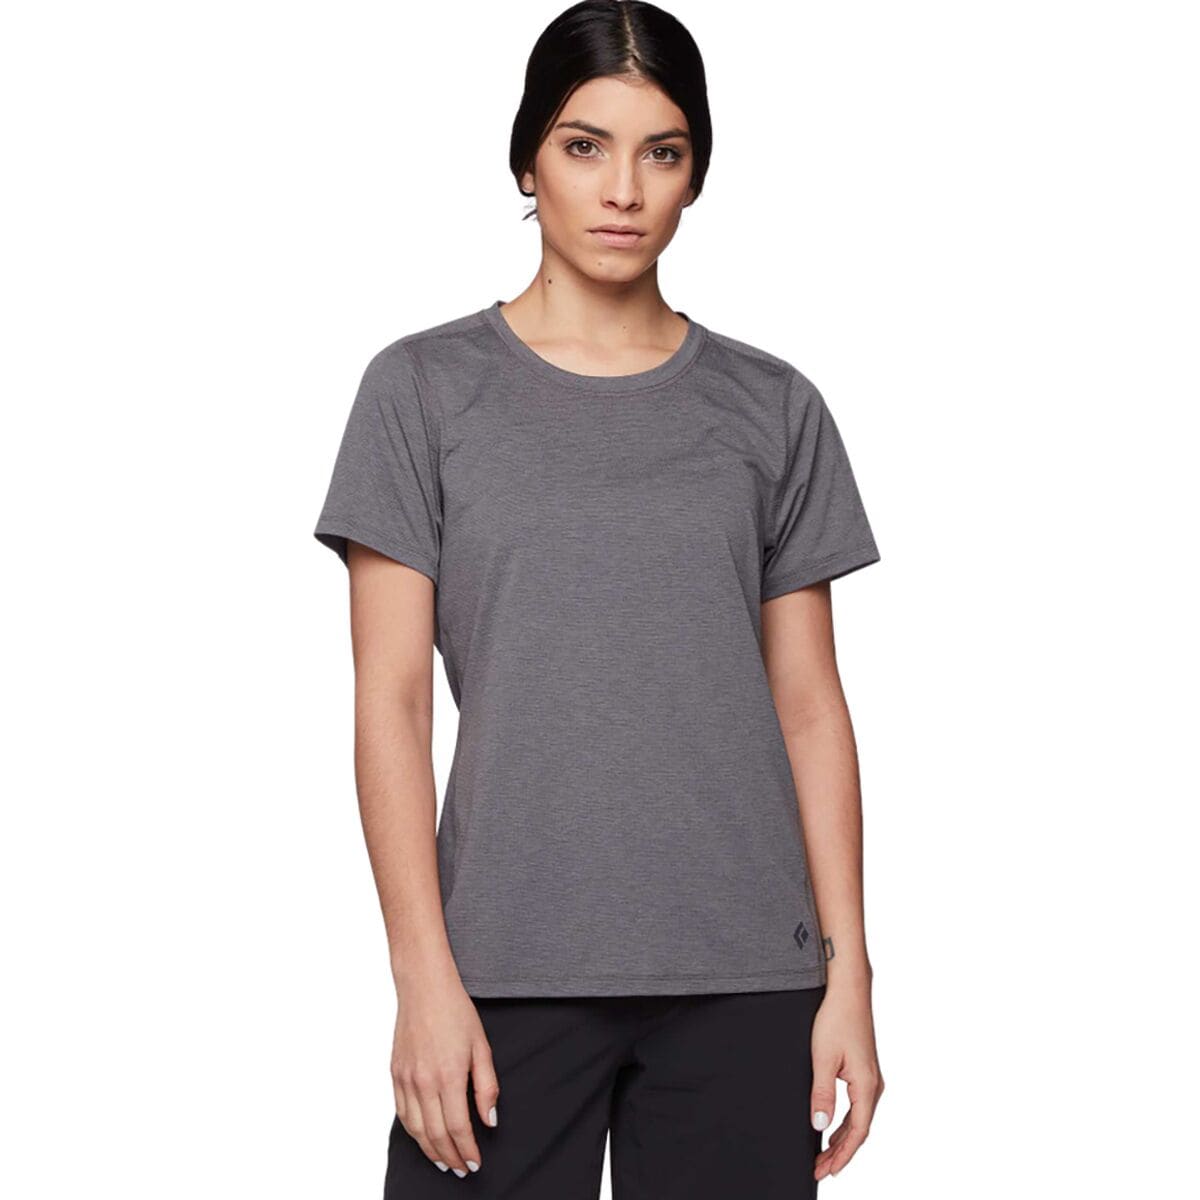 Lightwire Tech Short-Sleeve T-Shirt - Women